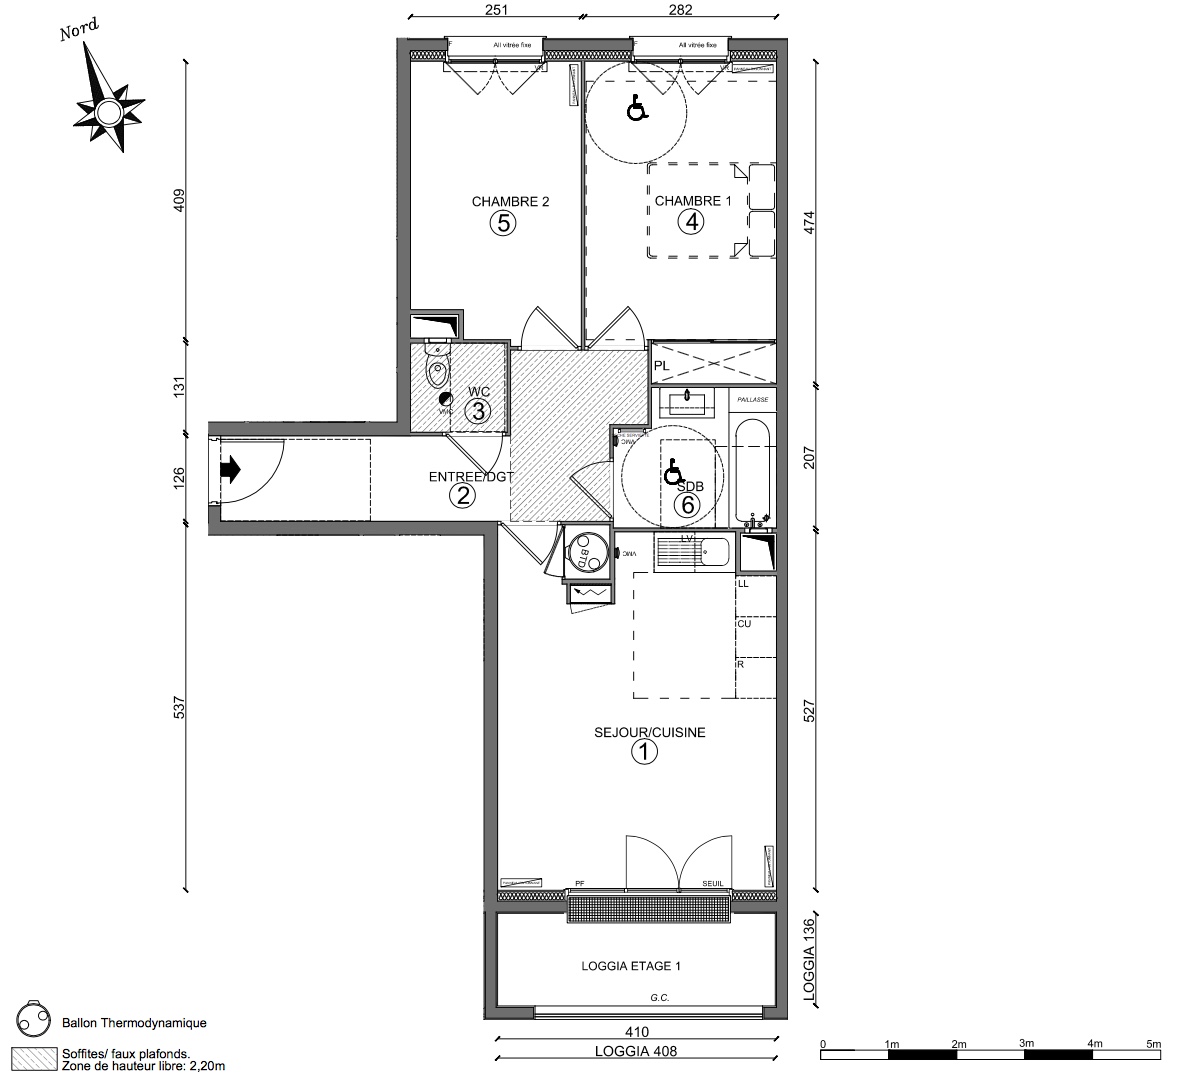 T3 - 60,00 m² - 1er étage - Balcon - Parking